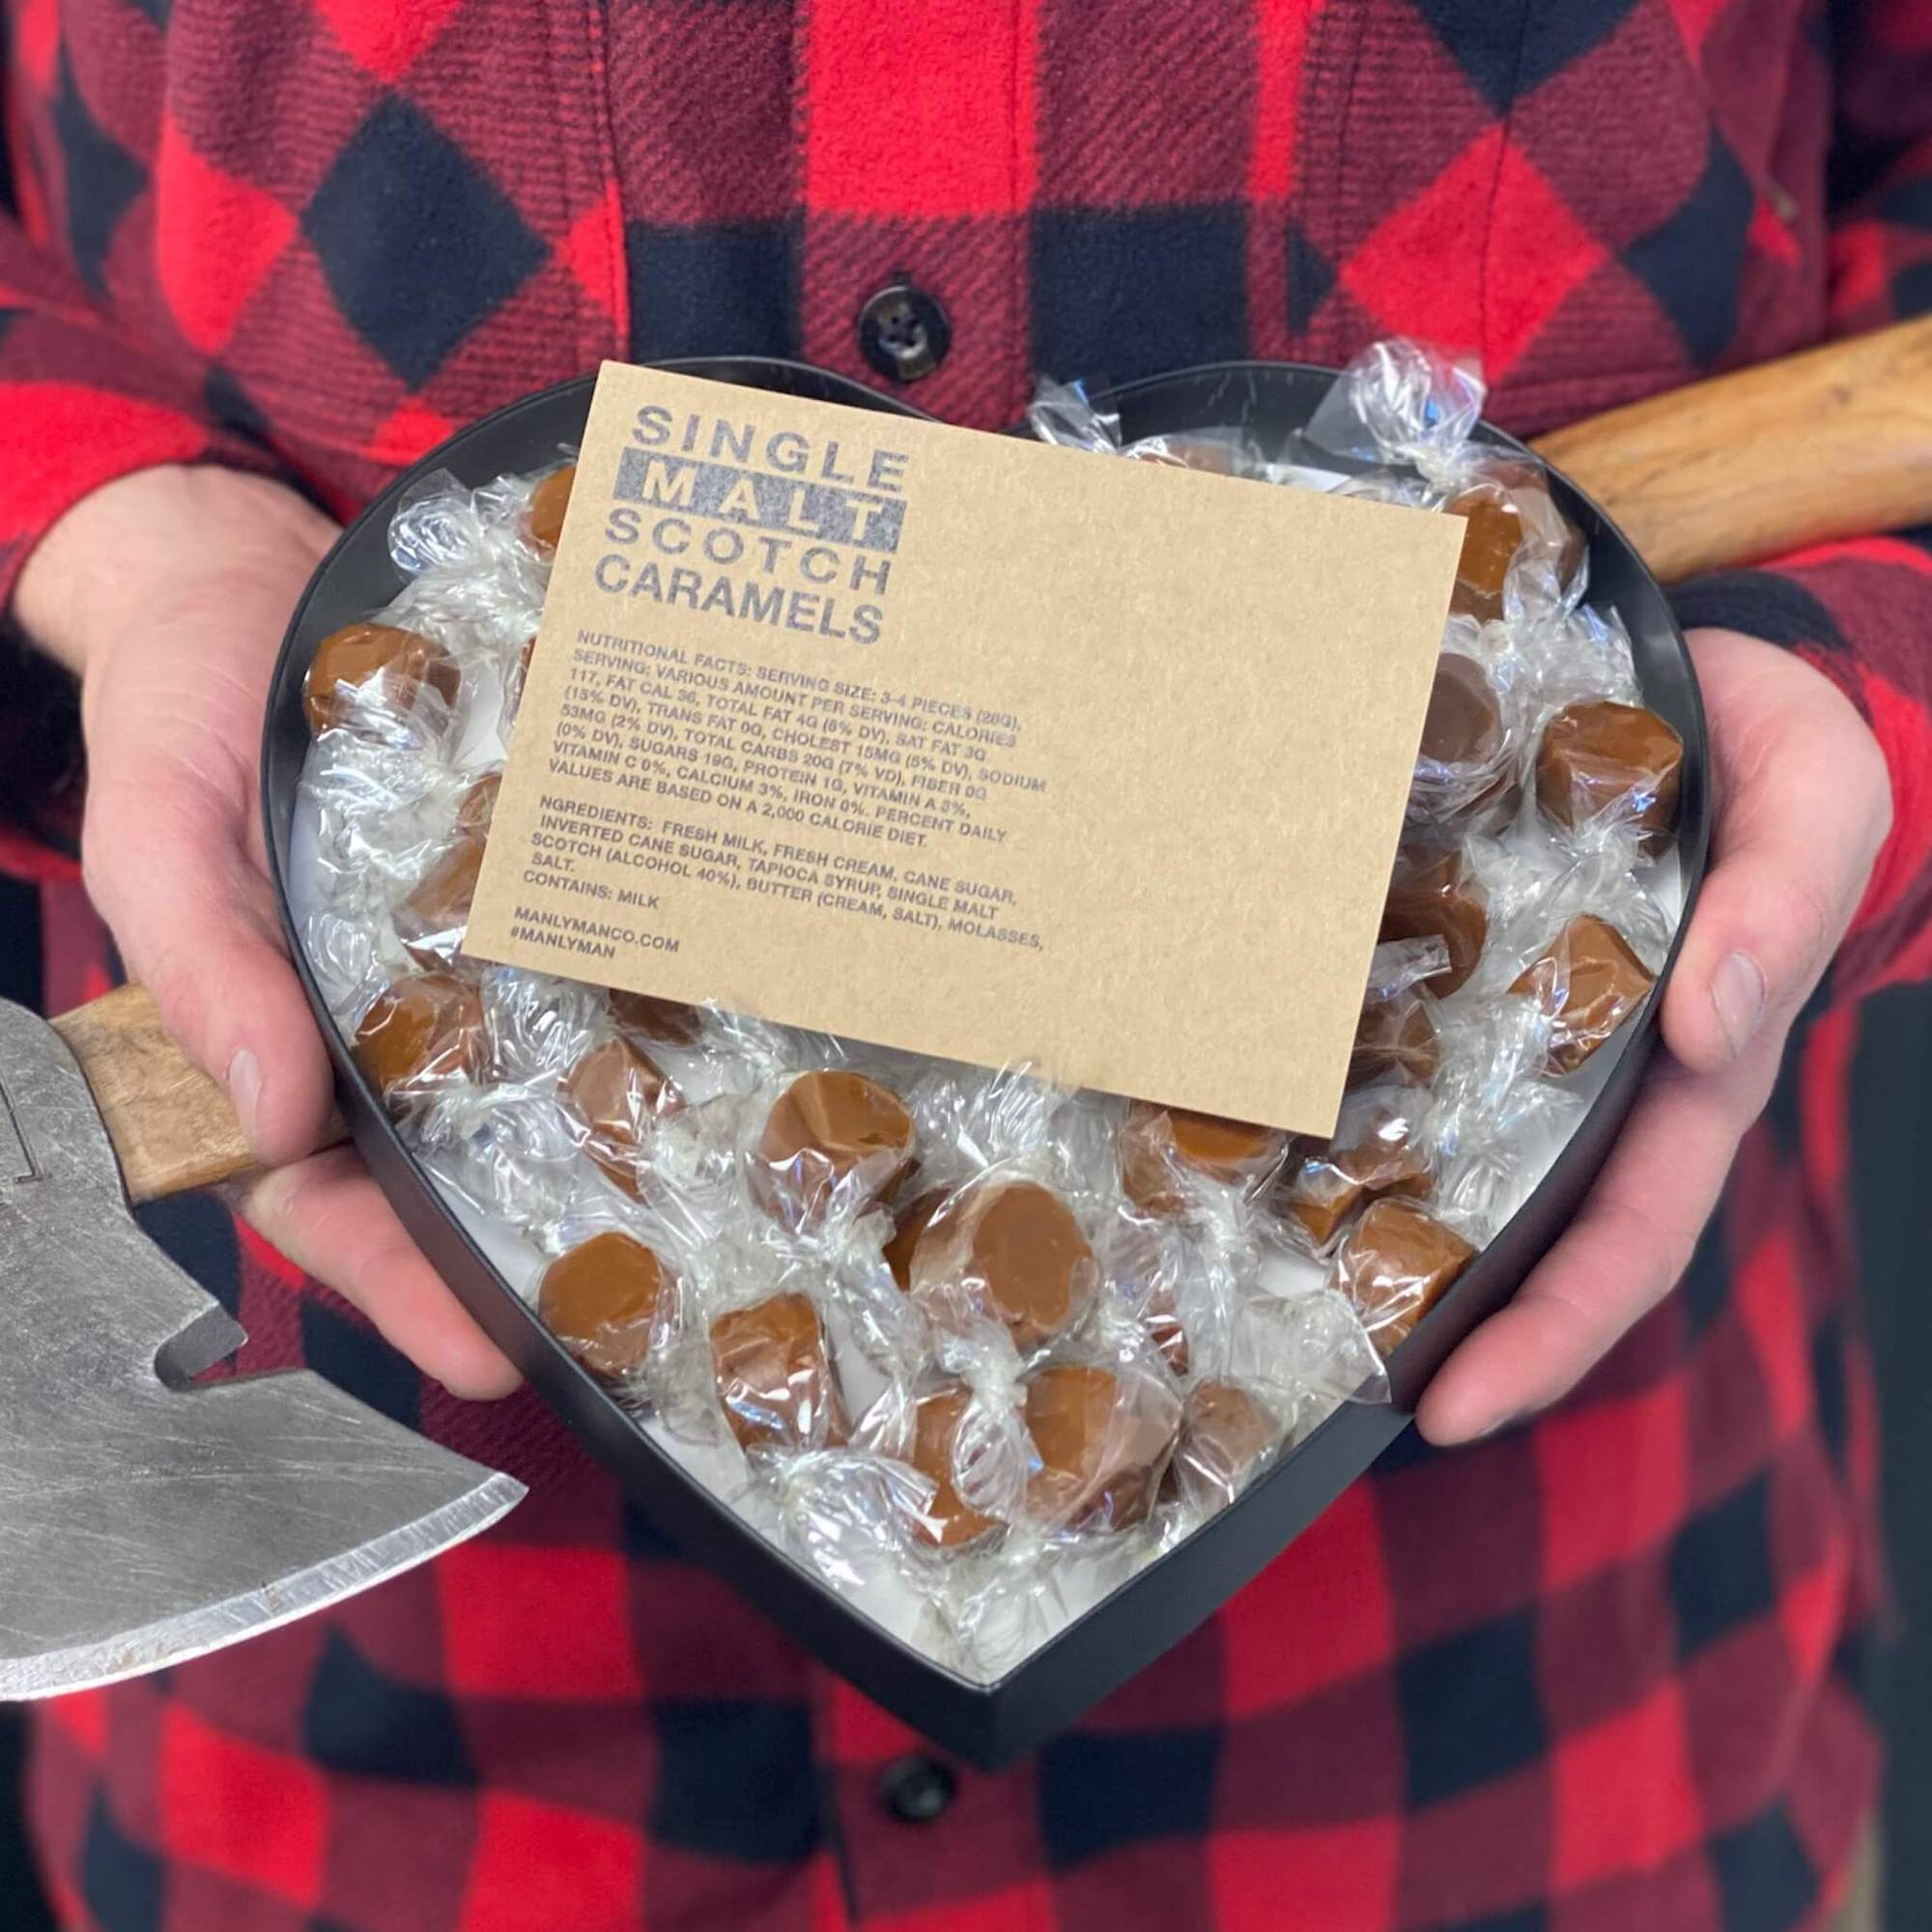 Valentine's gift set held by lumberjack